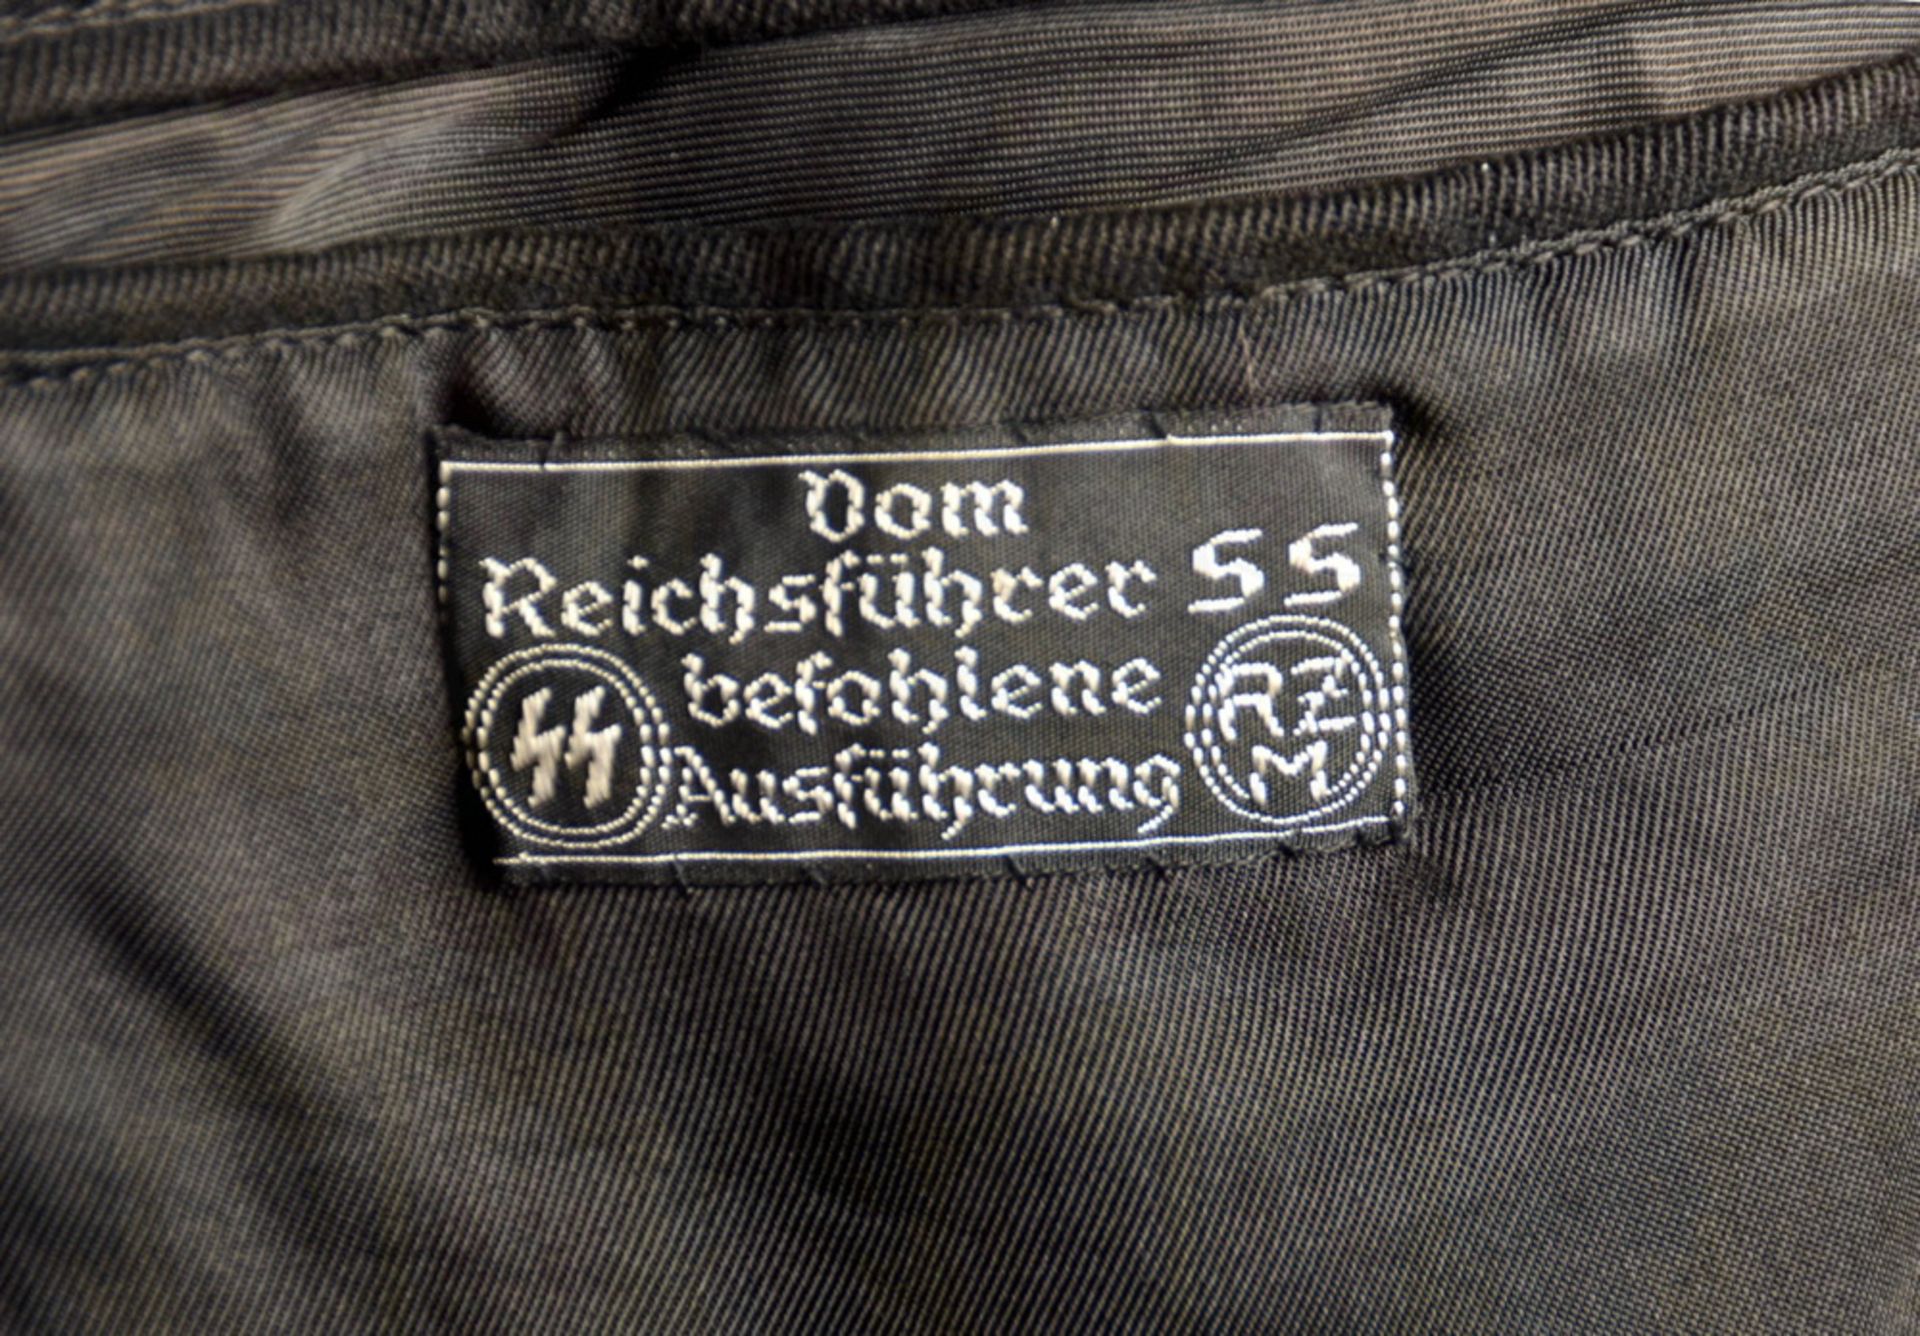 Tunic of a Leibstandarte SS Unterscharführer/SS NCO - Image 3 of 12